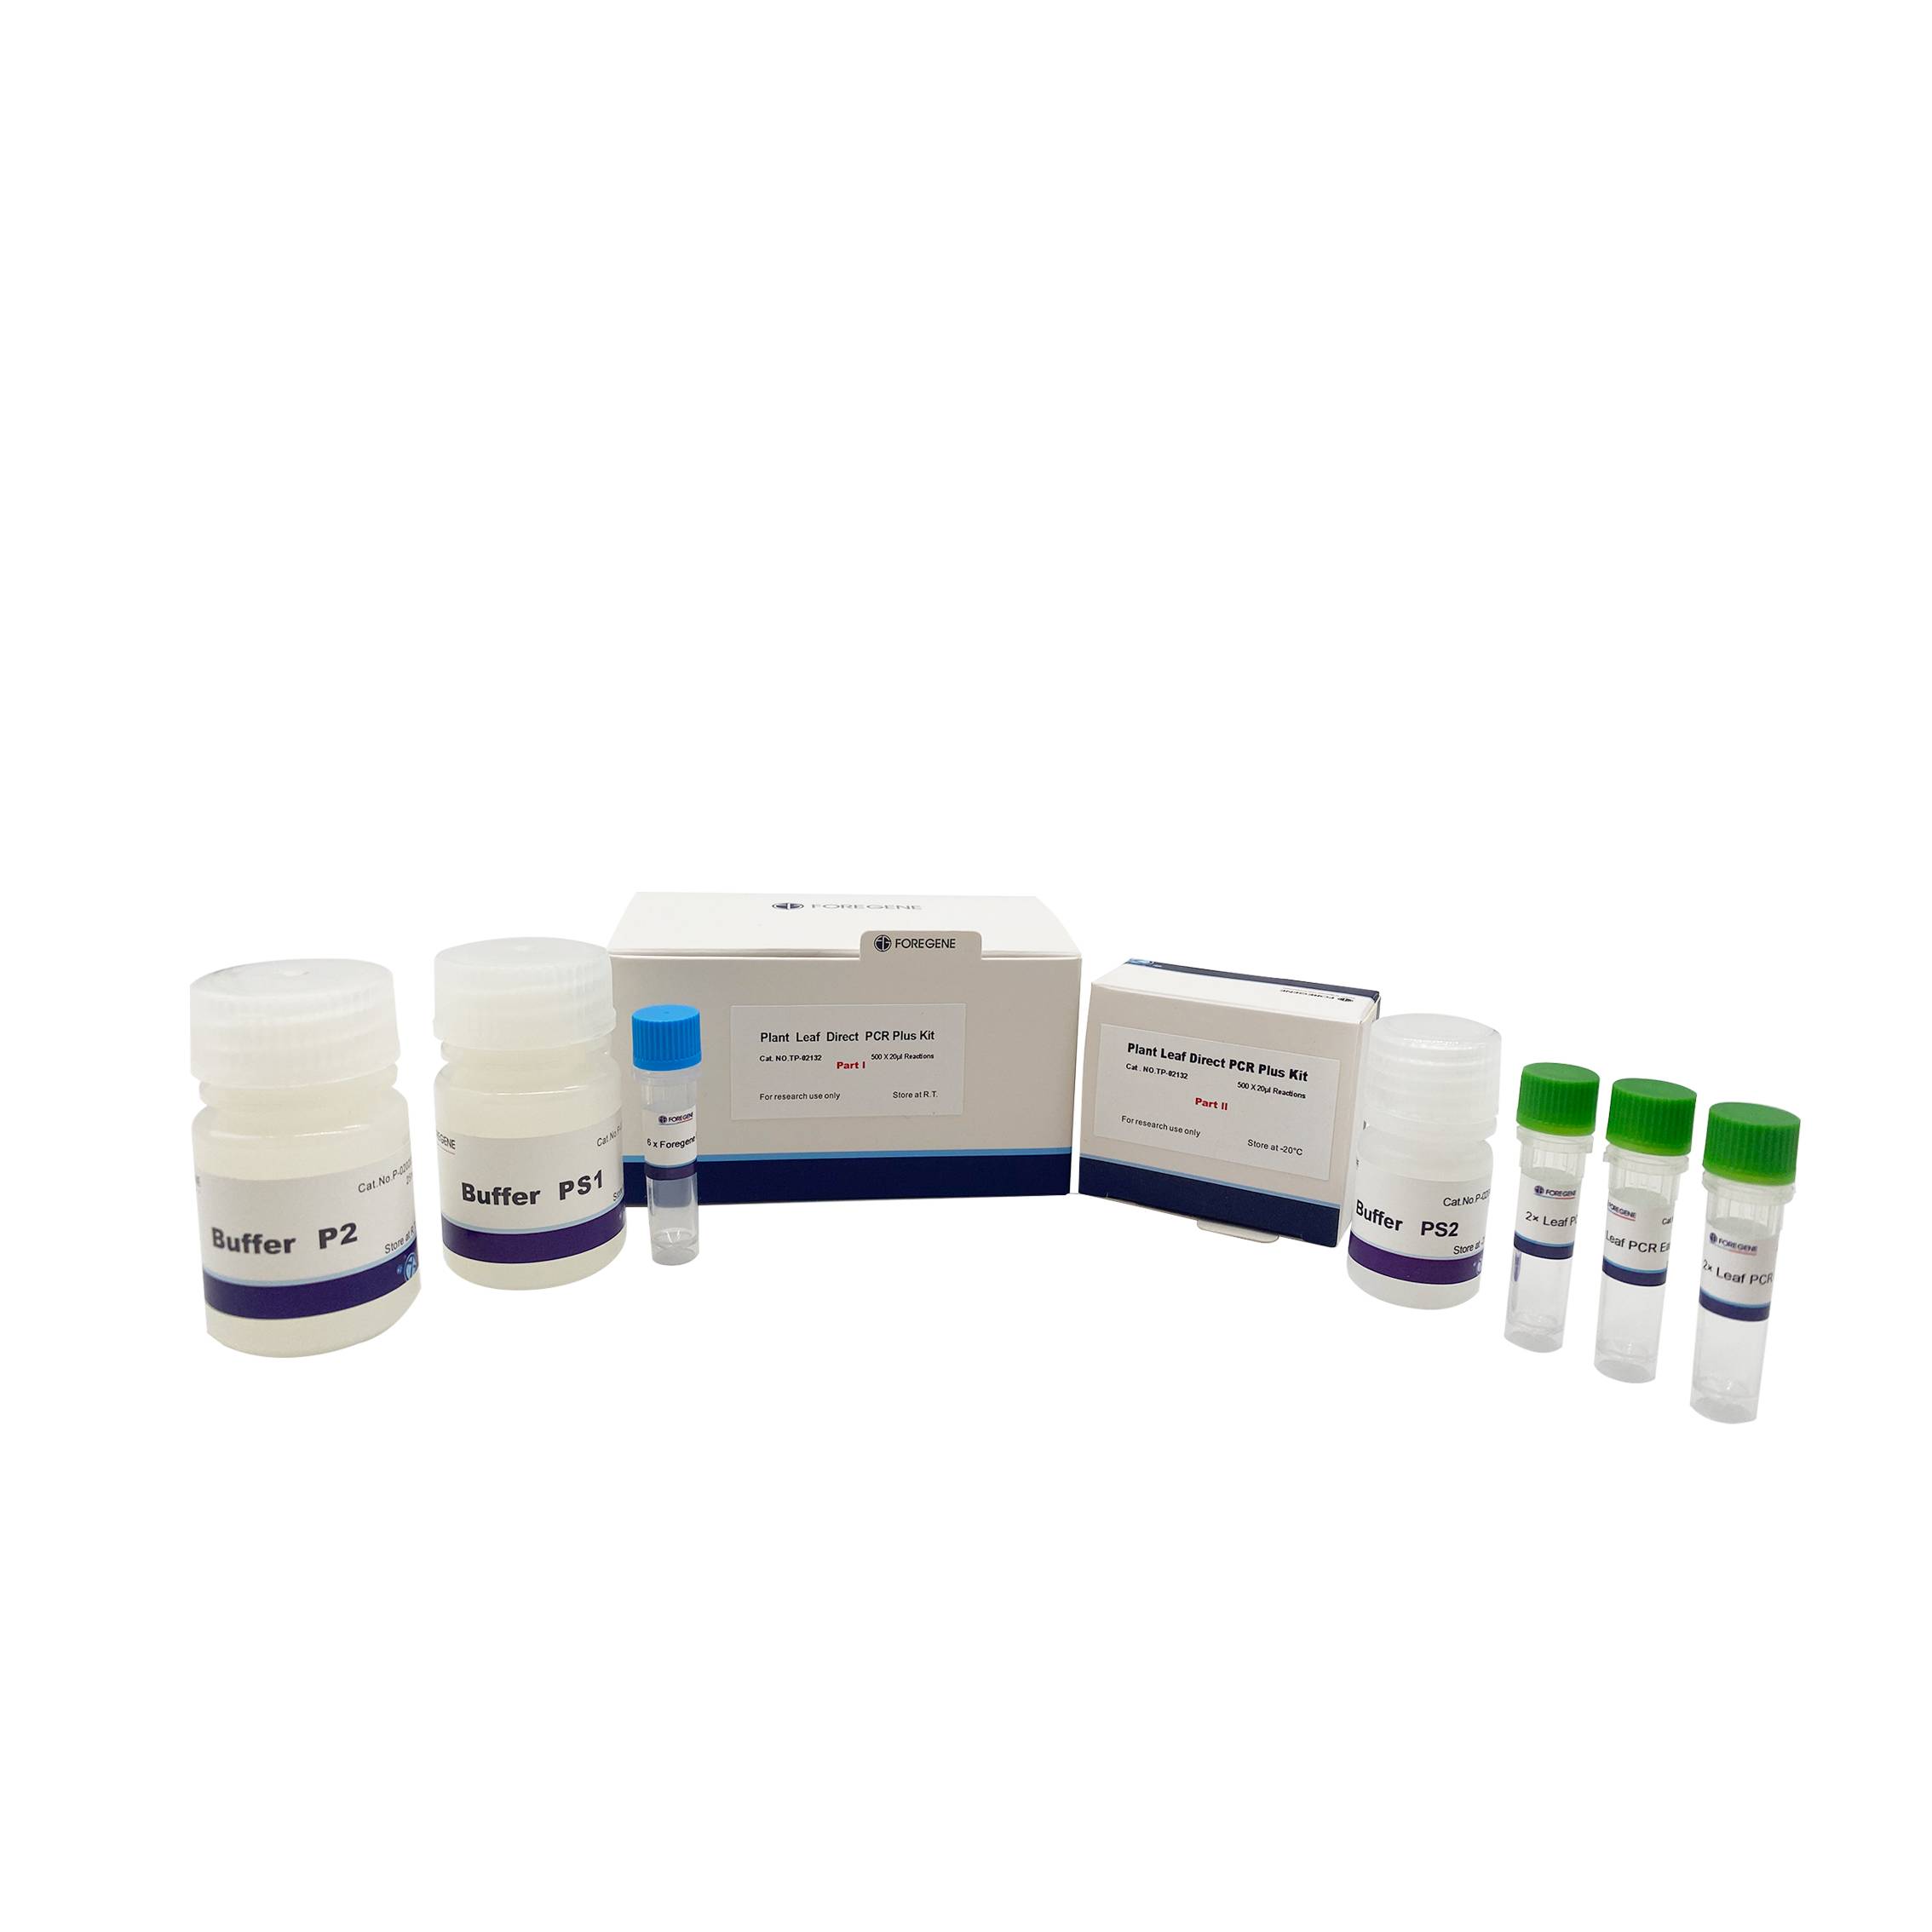 Plant Leaf Direct PCR Plus Kit3